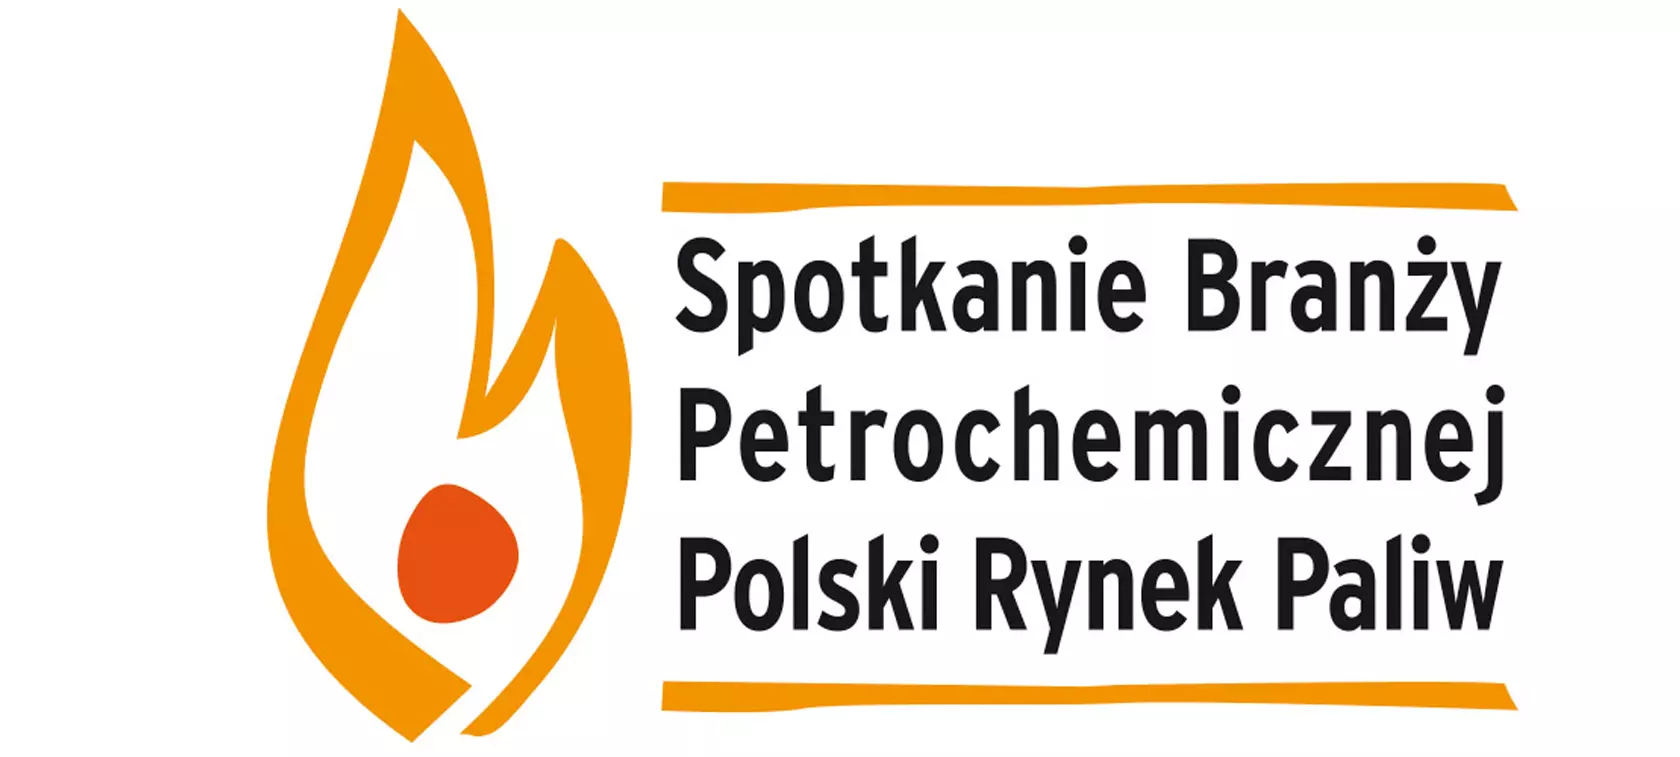 II Spotkanie Branży Petrochemicznej - Polski Rynek Paliw